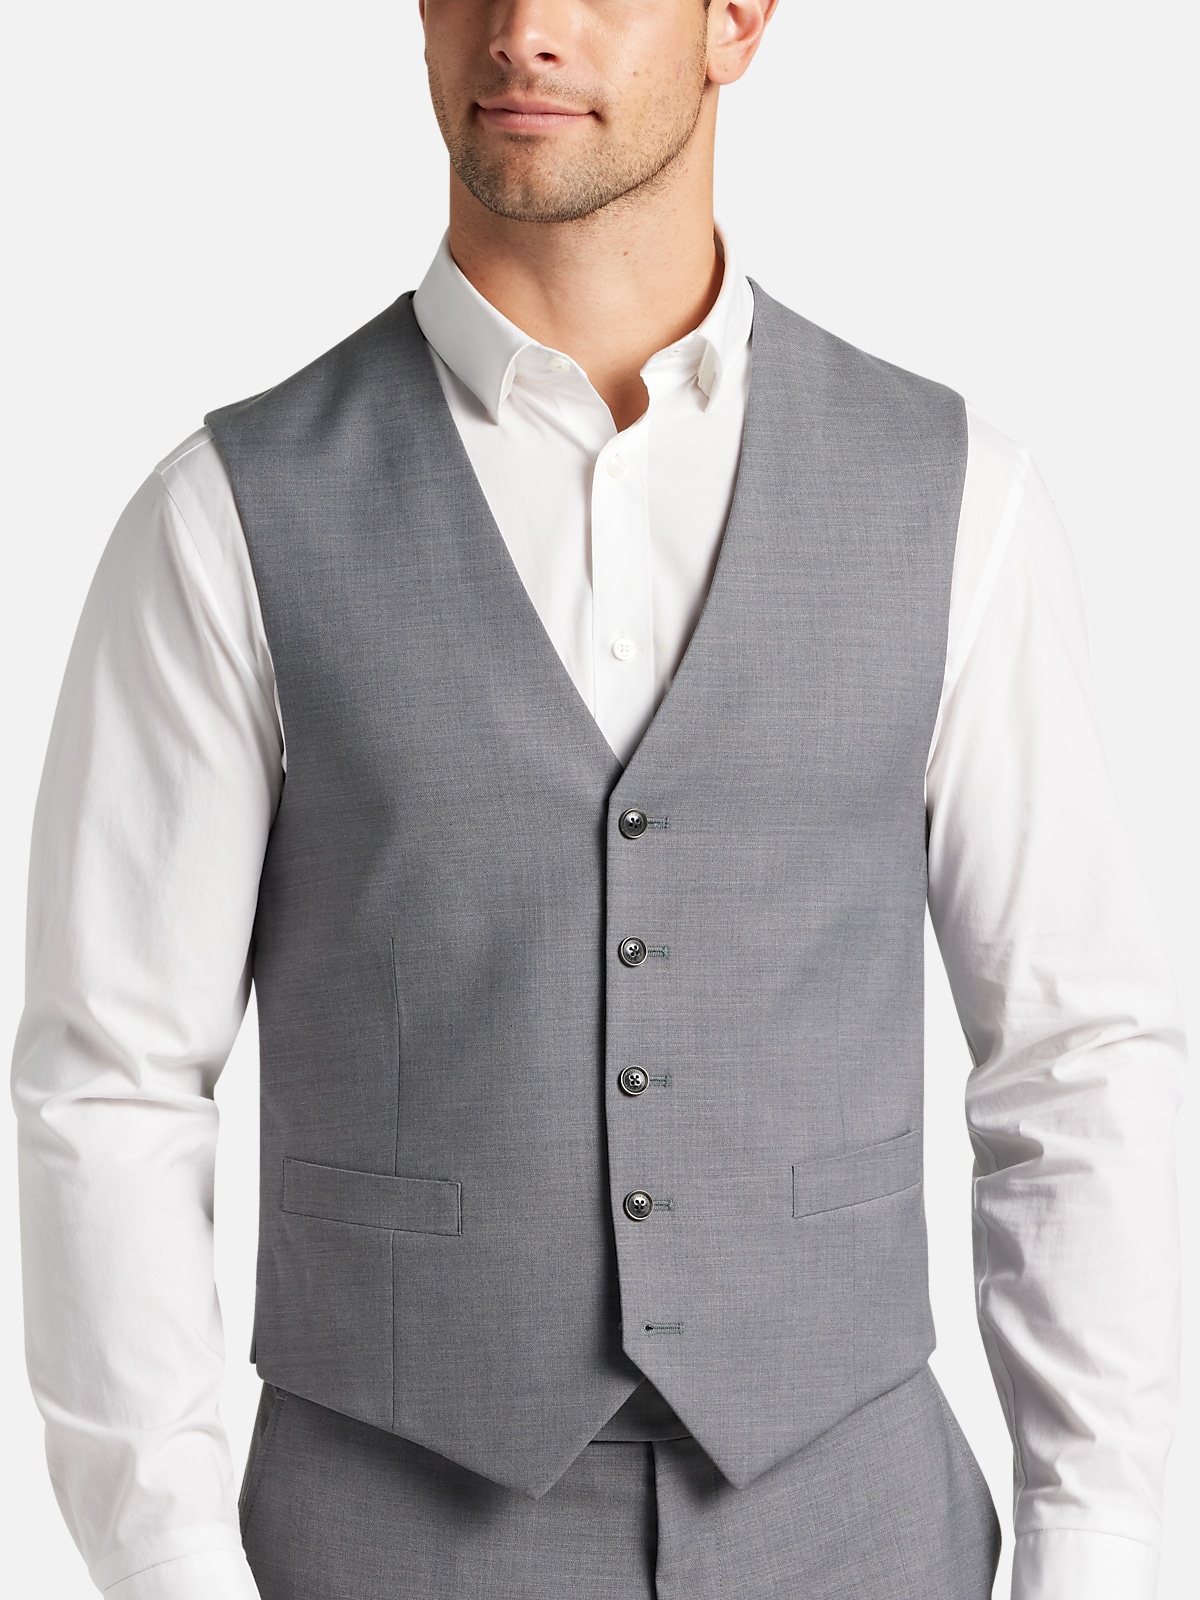 Tommy Hilfiger TH Flex Modern Fit Suit Separates Vest | All Sale| Men's ...